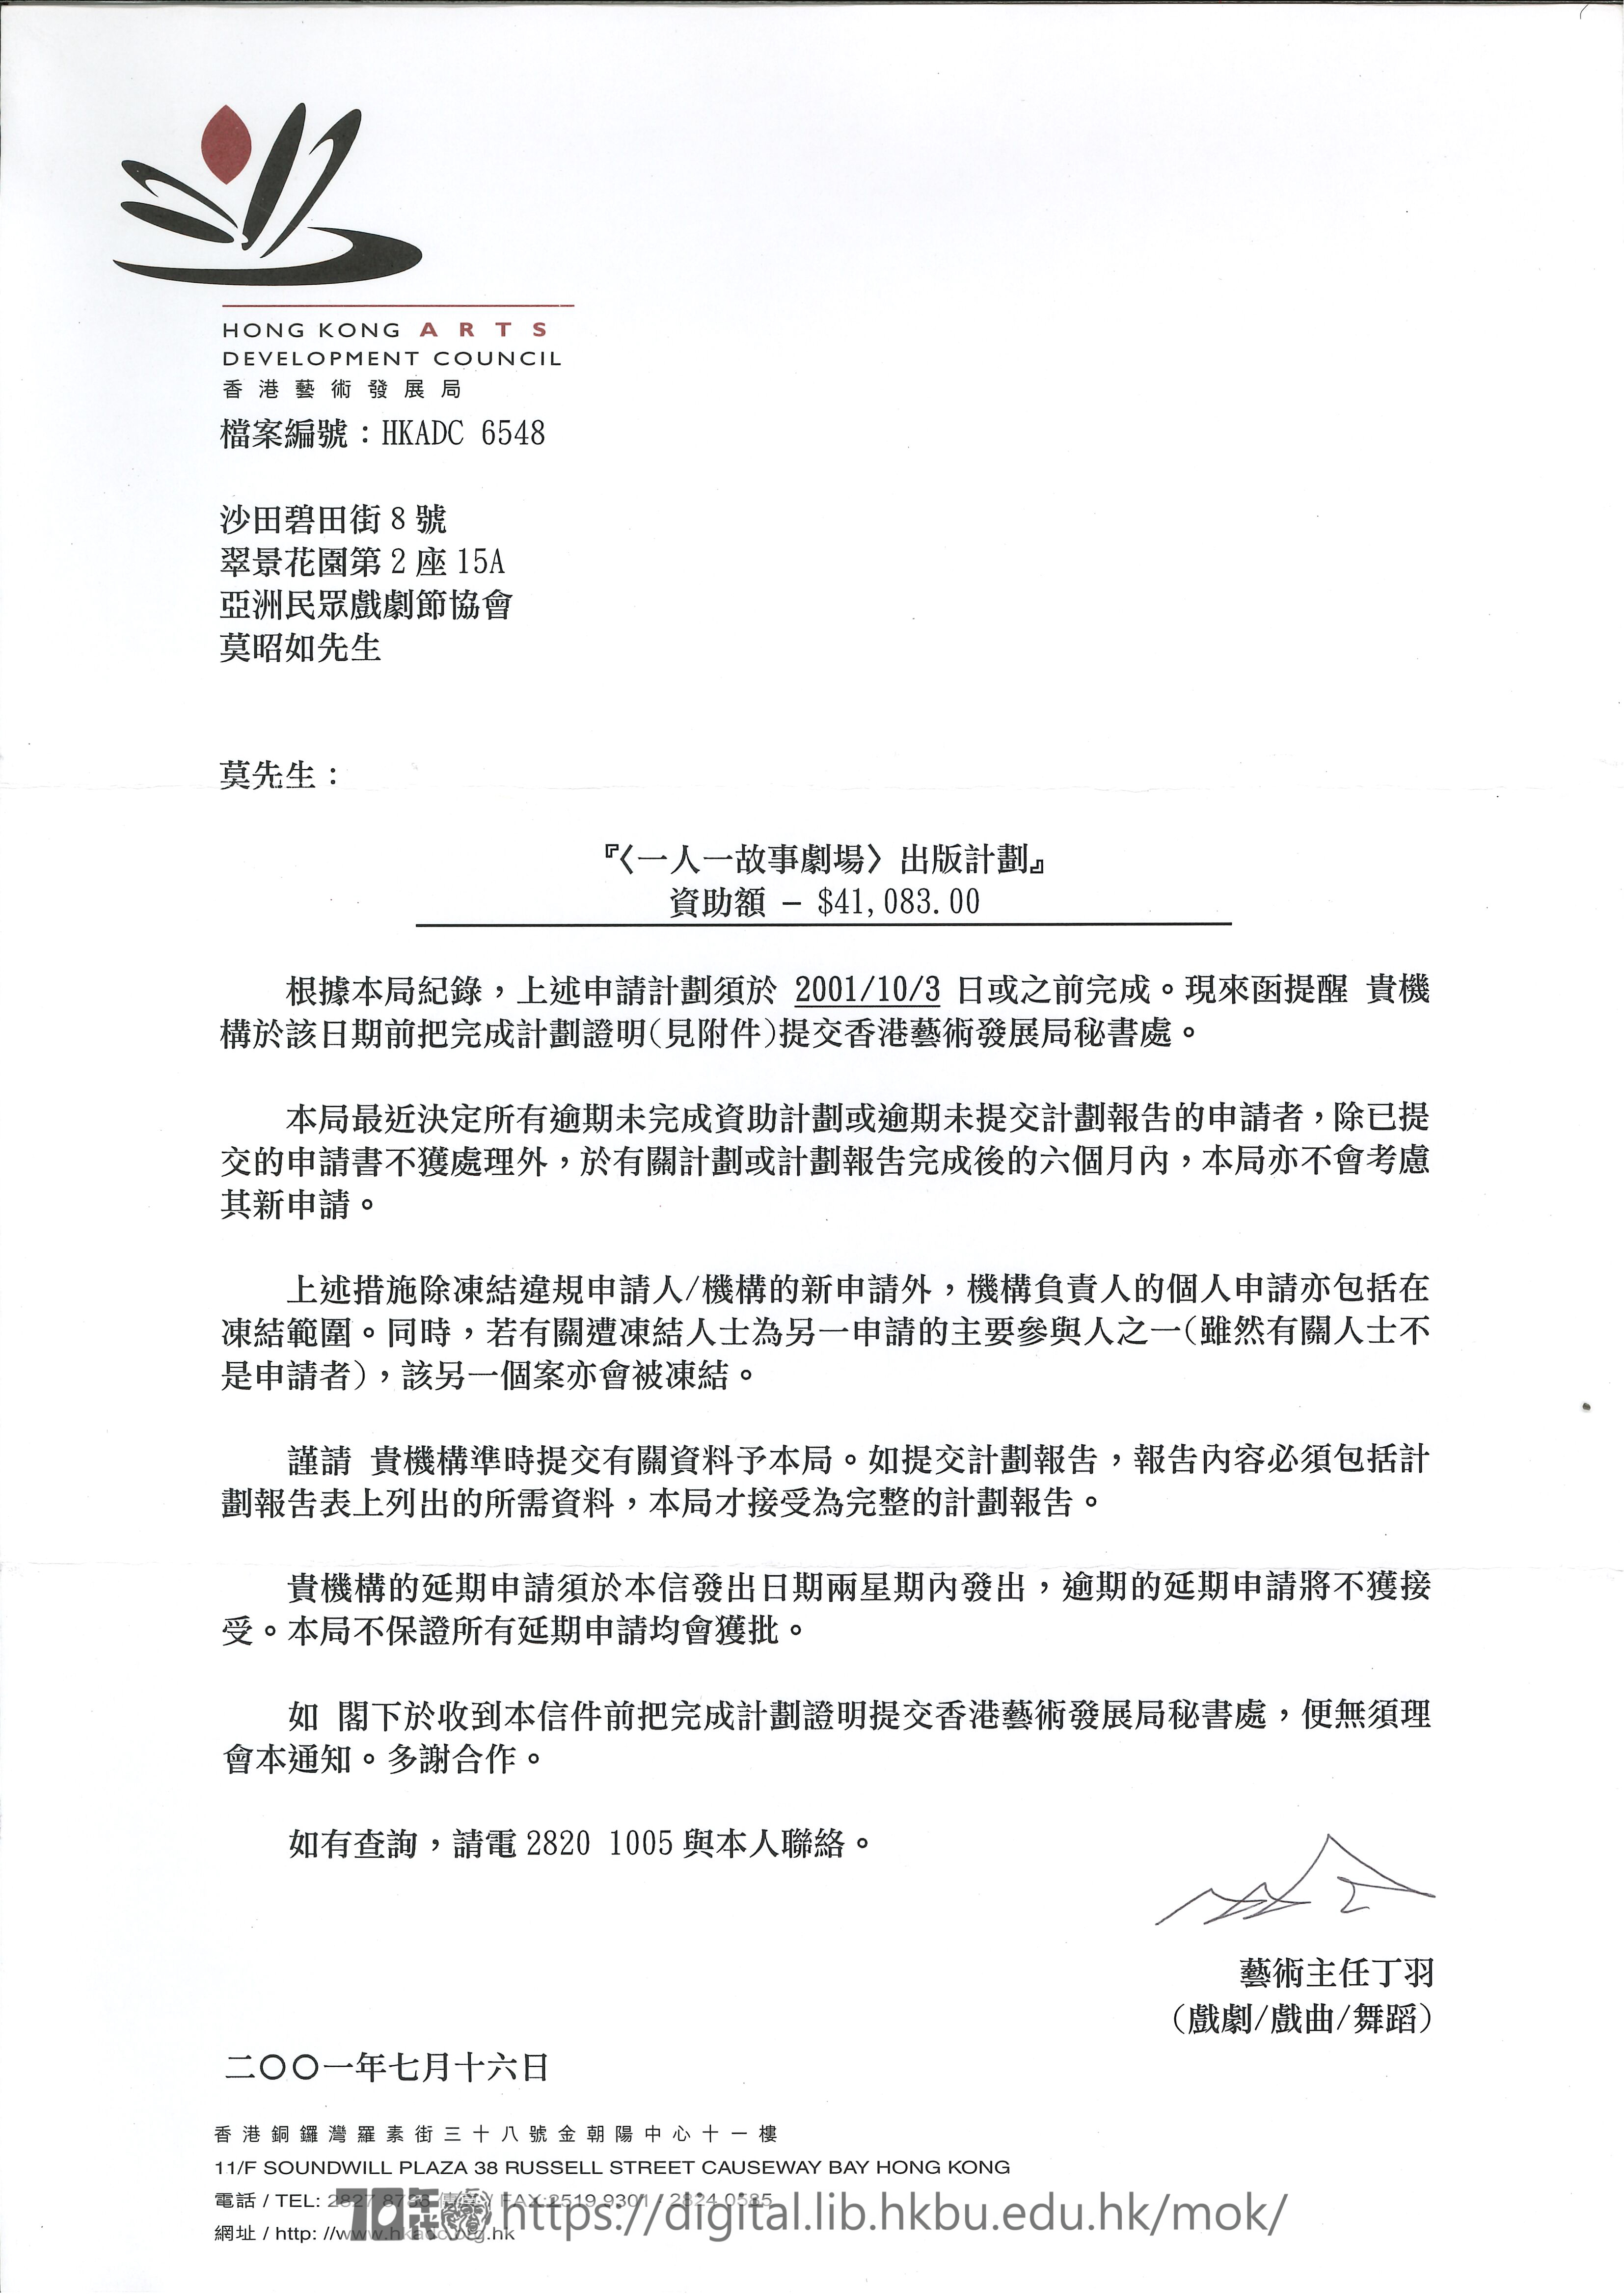 社區劇場  香港藝術發展局計劃時間提醒函  